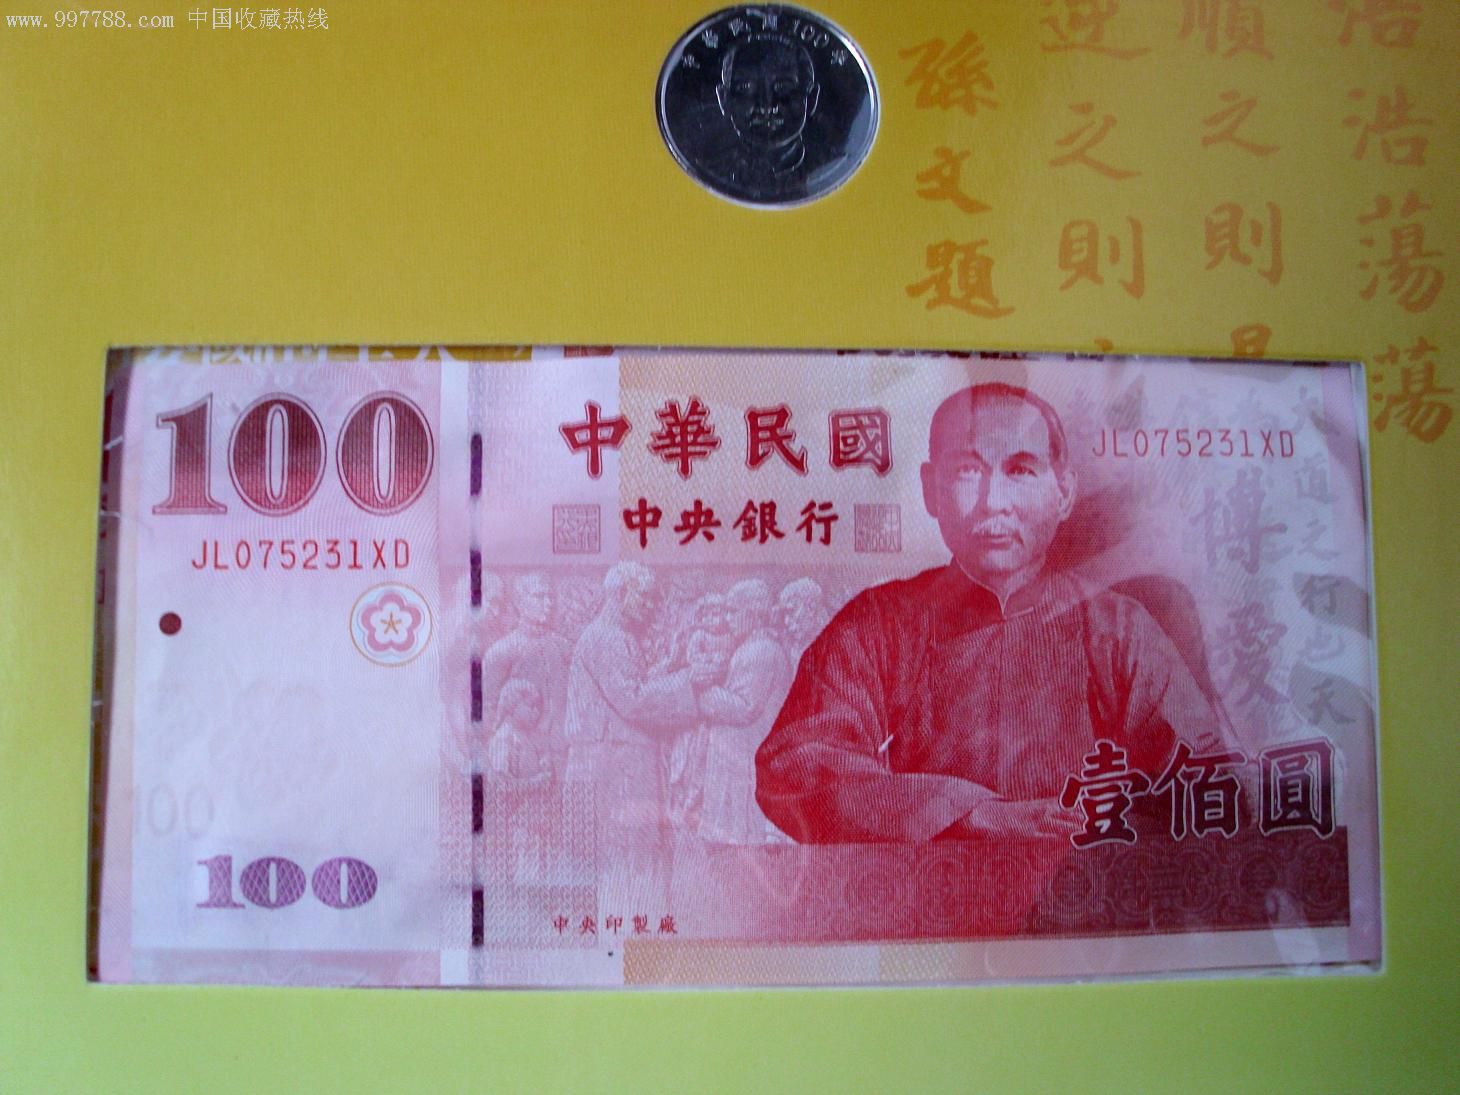 全新挺版台湾辛亥革命一百周年100台币纪念钞10元纪念币